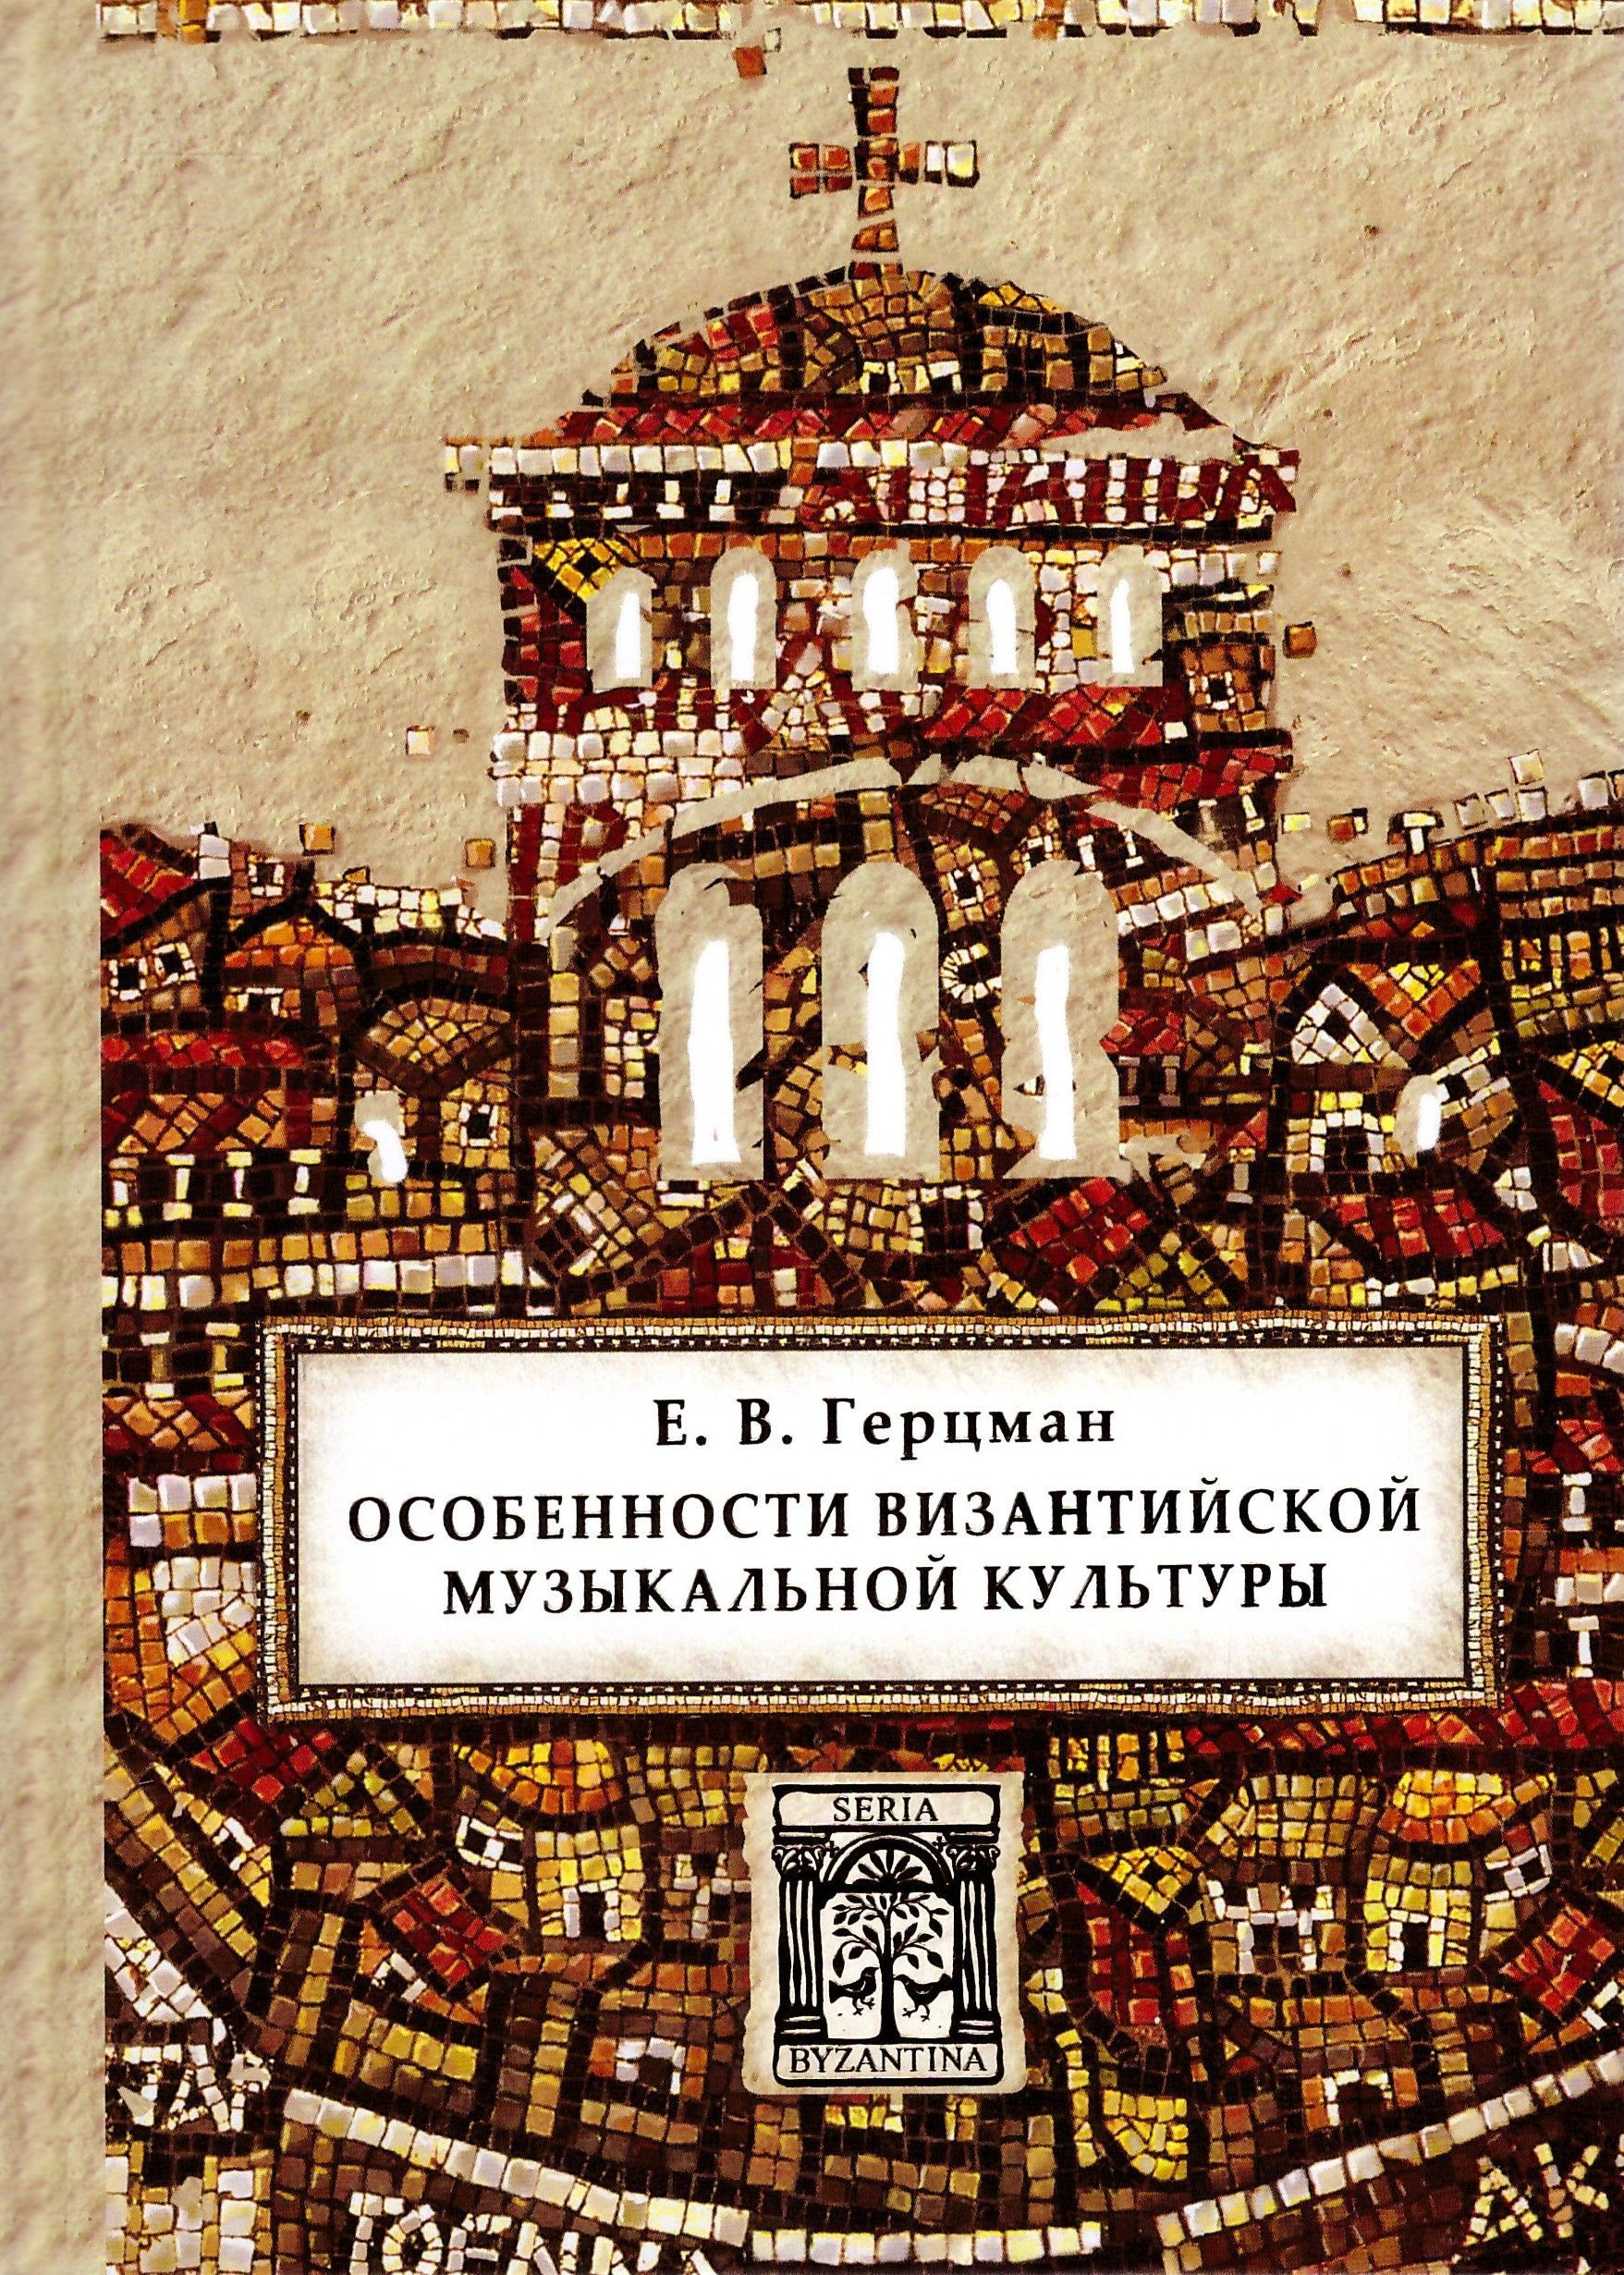 Книги о музыке  Подписные издания Особенности византийской музыкальной культуры